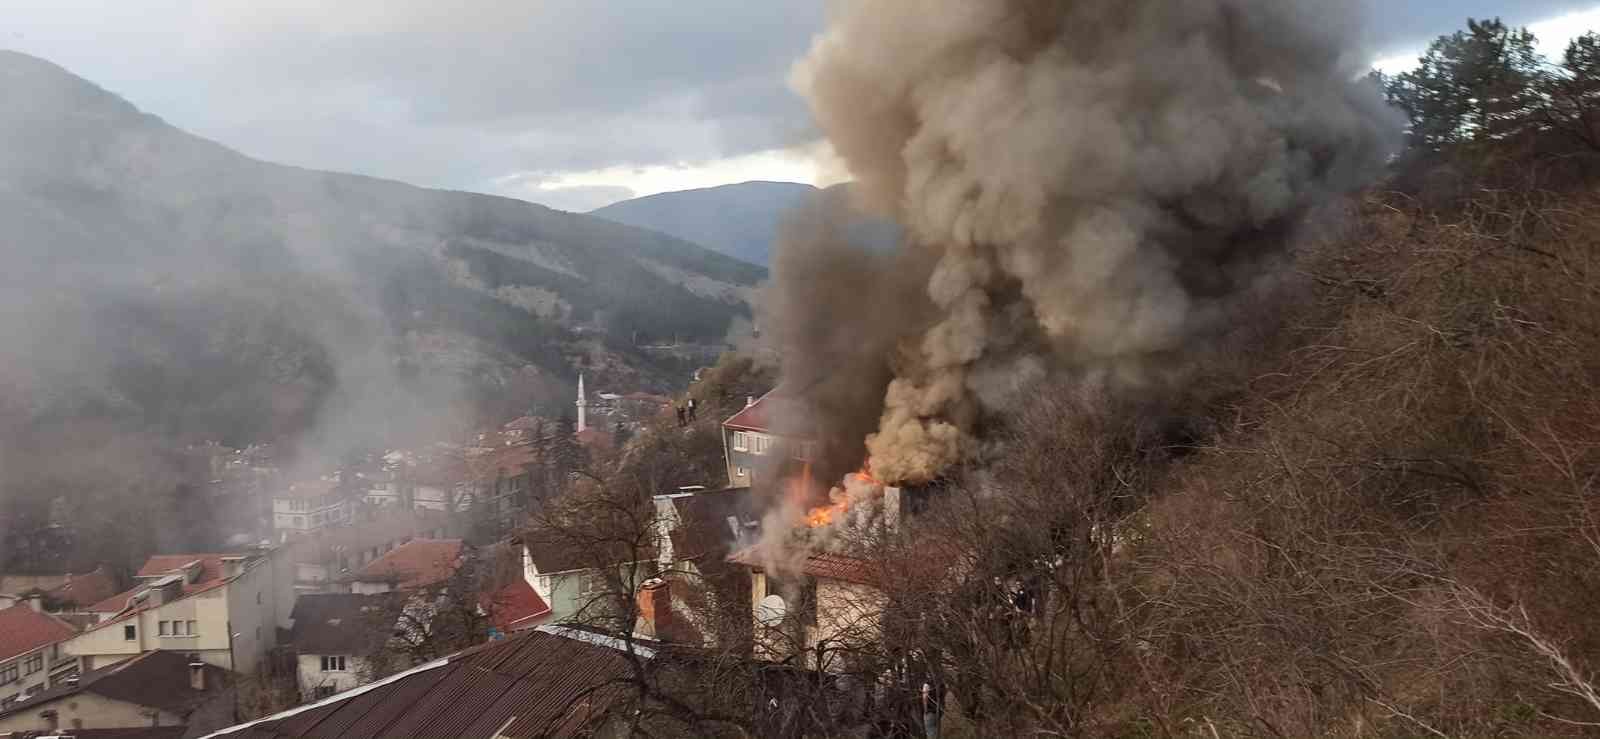 Bolu’da aynı kişiye ait 2 ahşap ev alev alev yandı #bolu